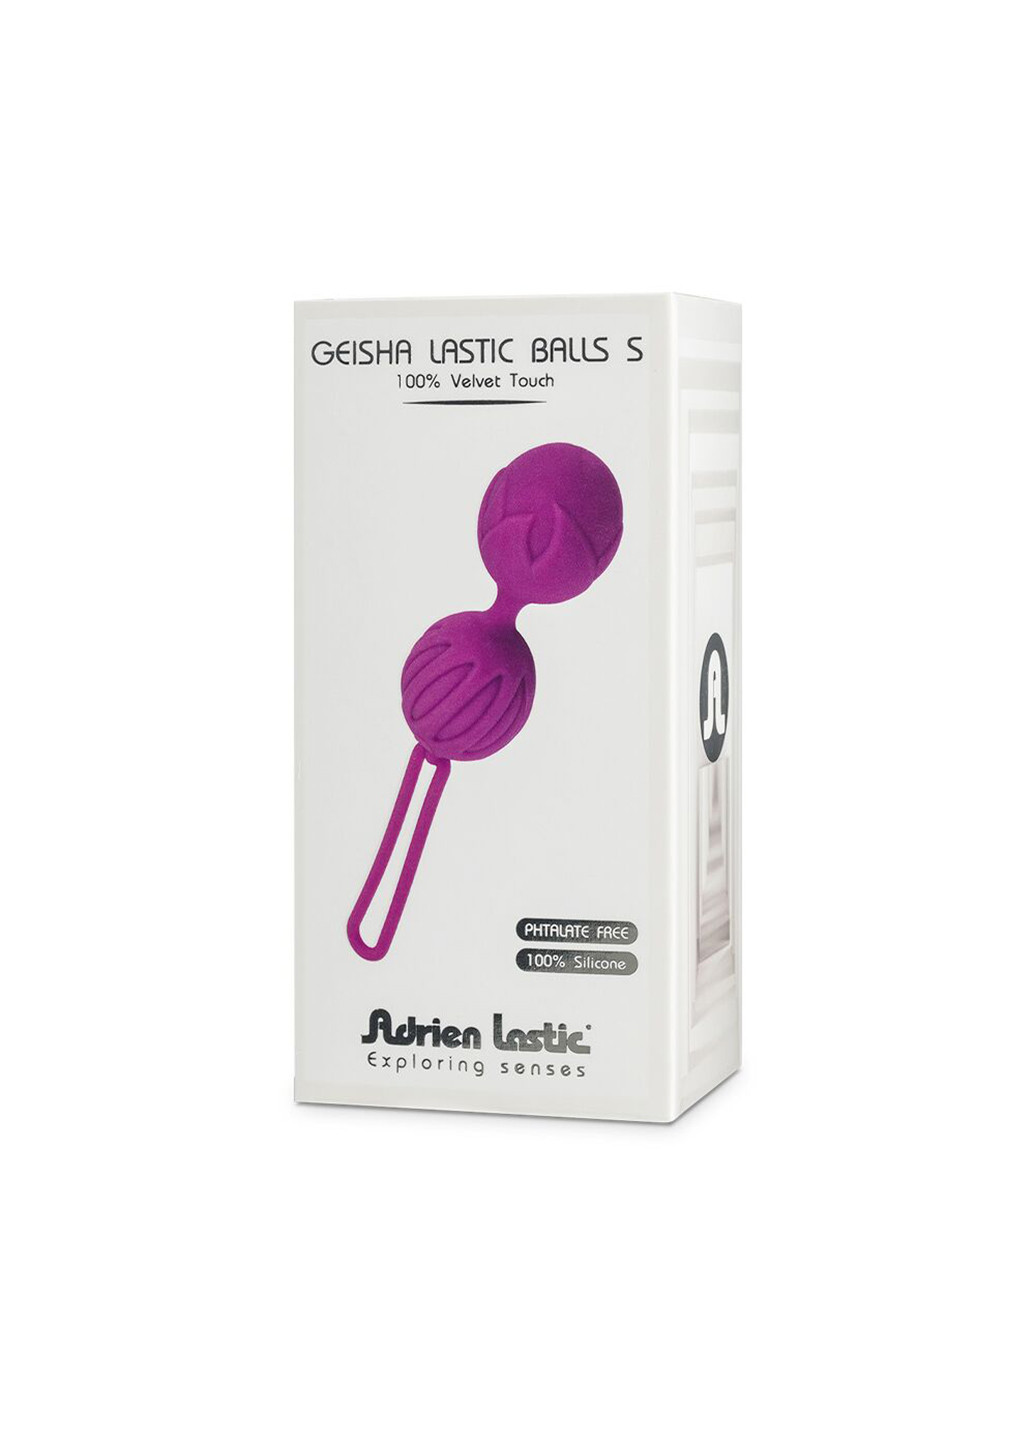 Вагинальные шарики Geisha Lastic Balls Mini Violet (S), диаметр 3,4см, вес 85гр Adrien Lastic (254152113)